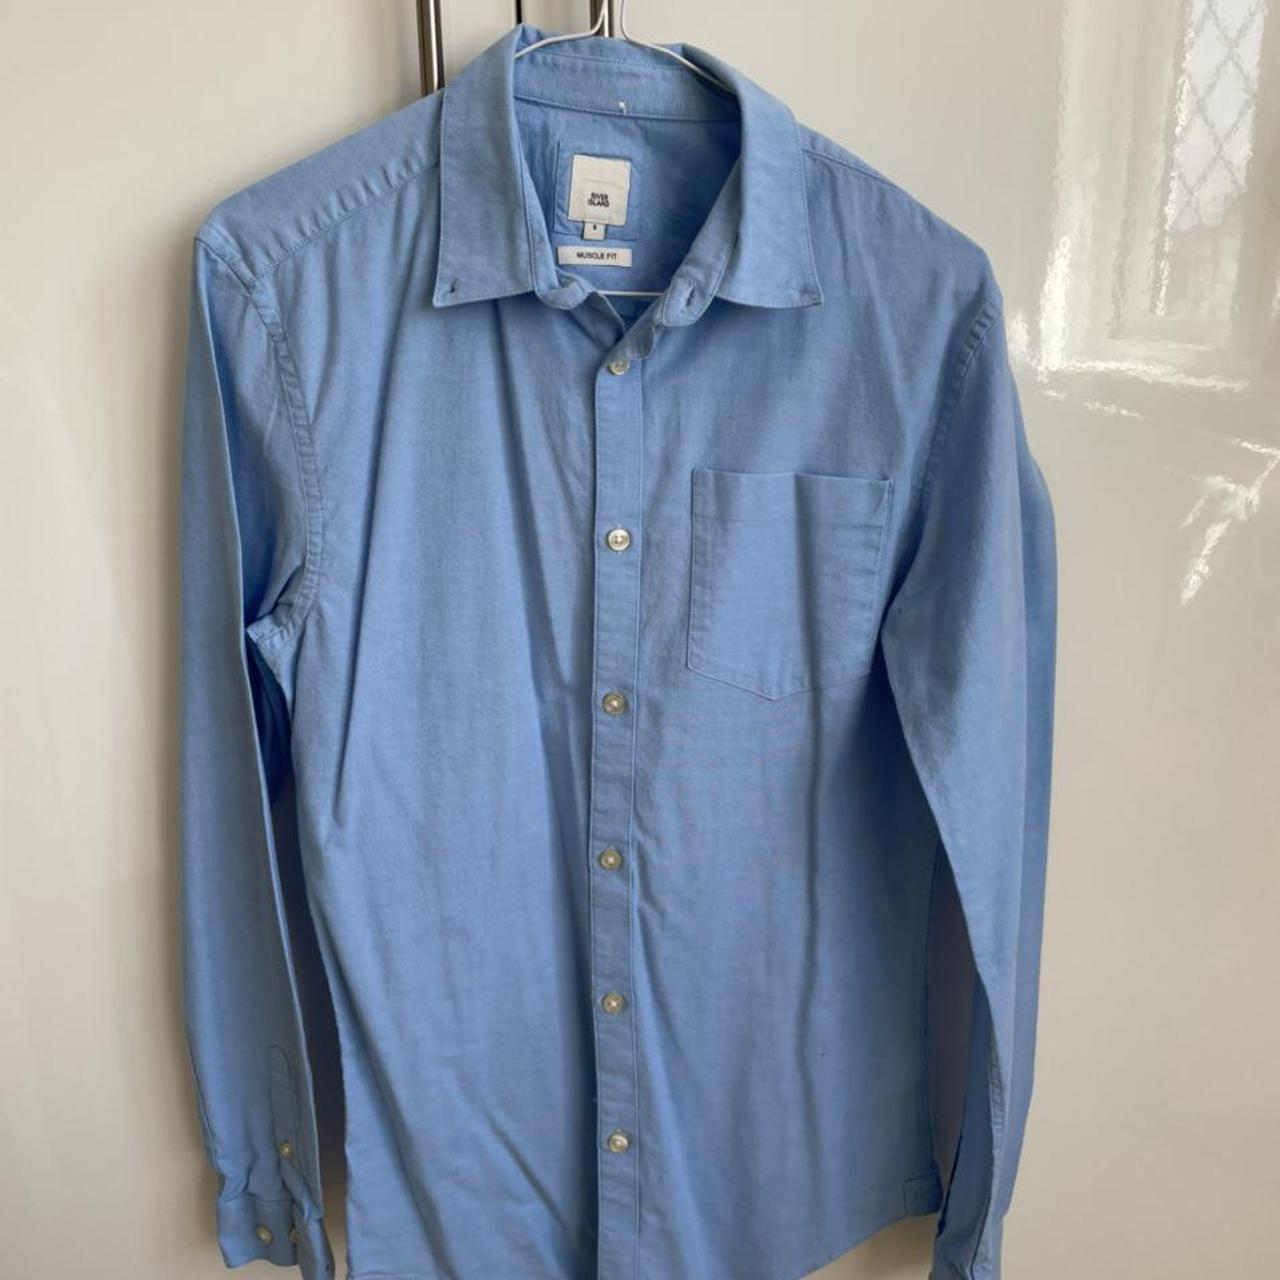 River Island Men's Blue Shirt | Depop